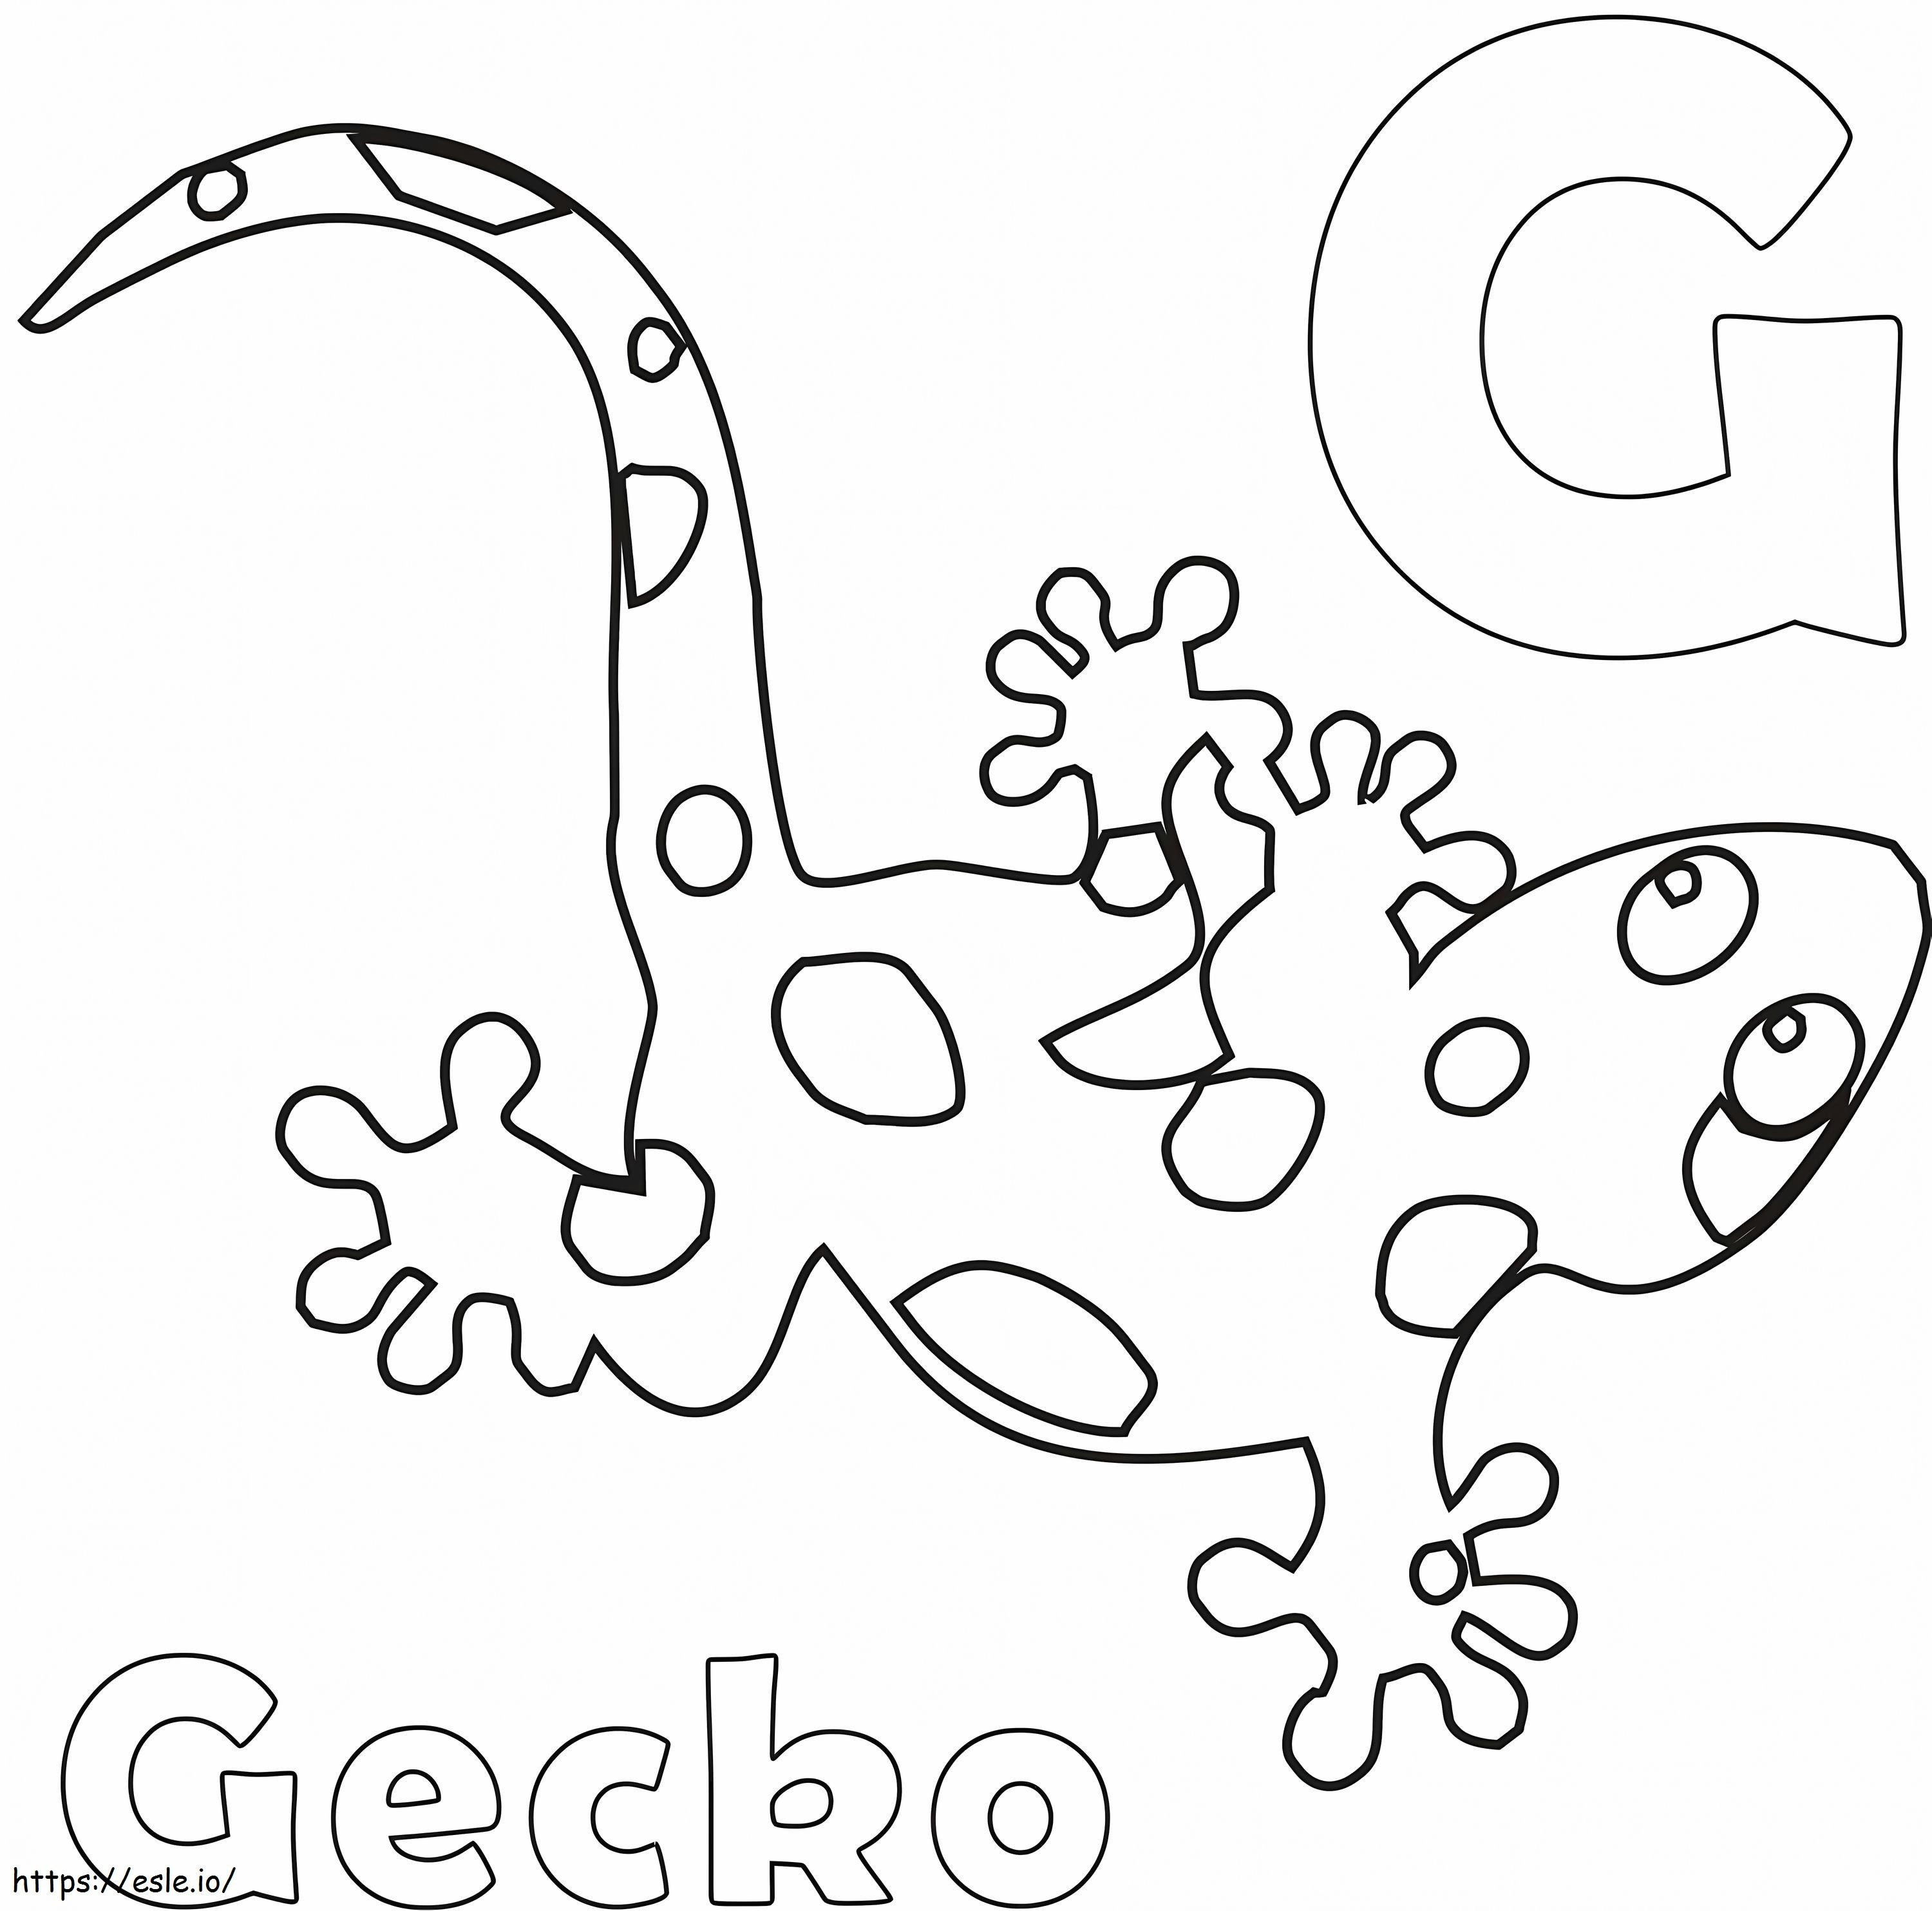 Letra g y gecko para colorear